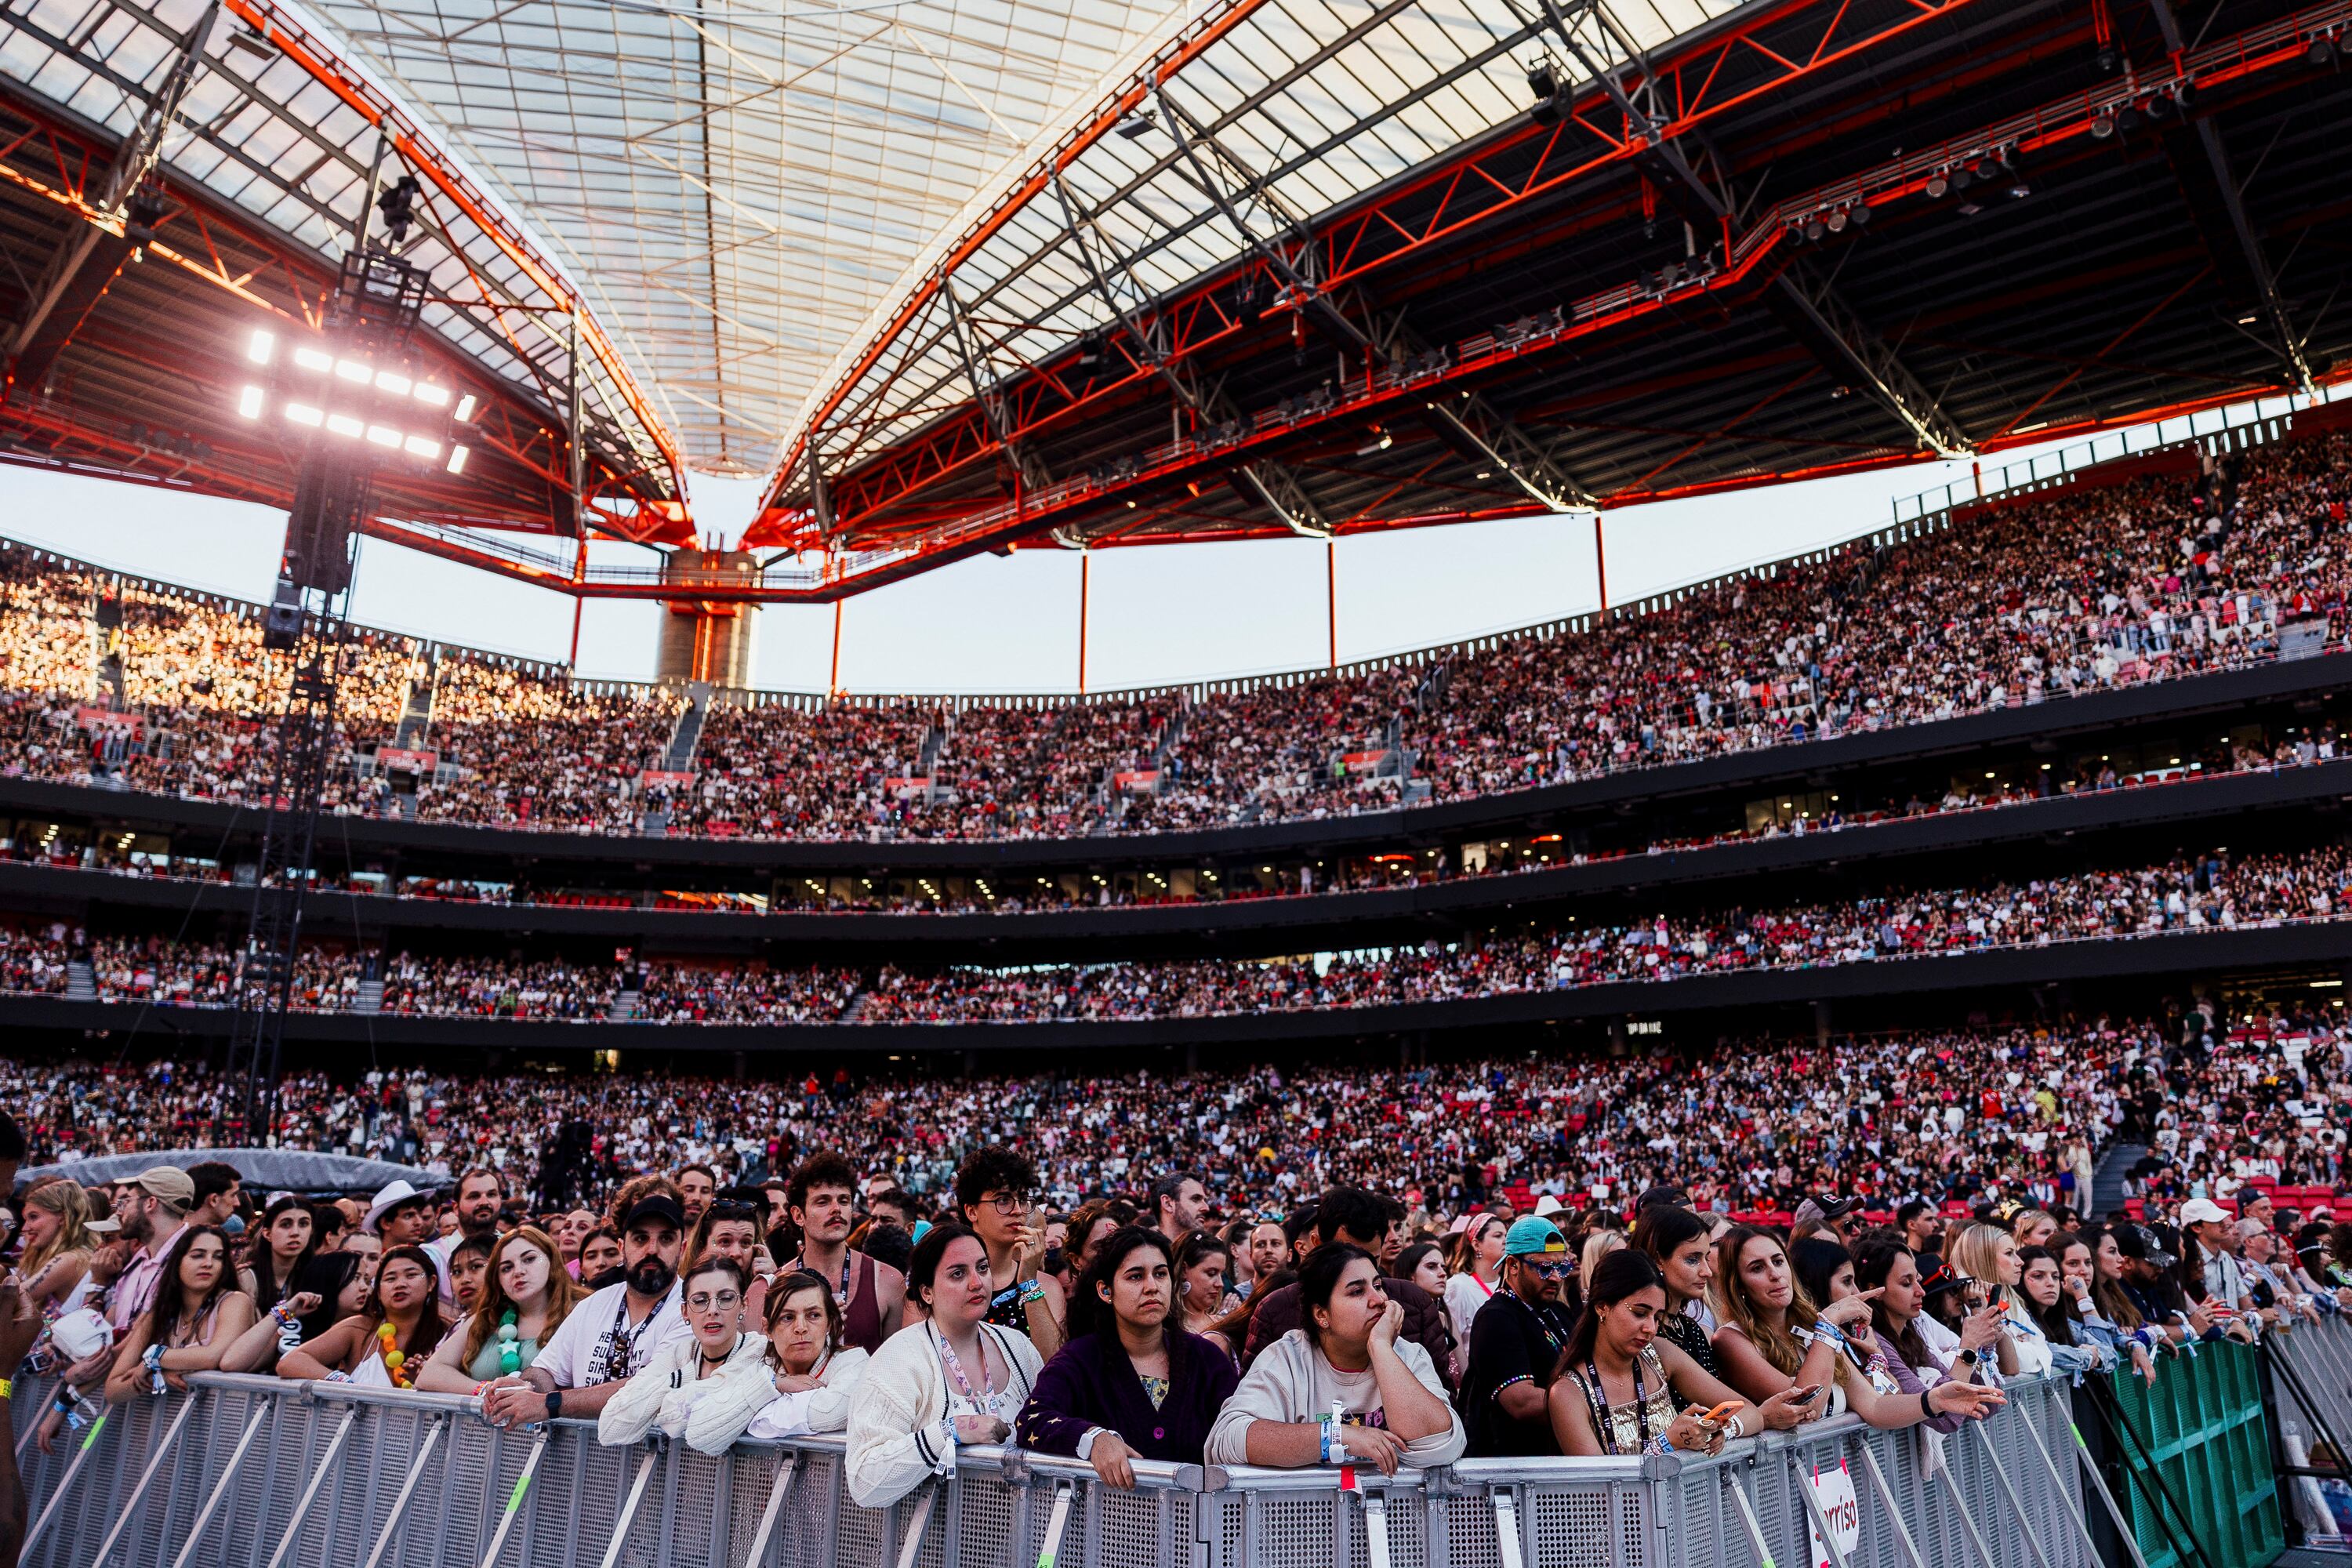 Concierto de Taylor Swift en Estadio de Luz en Lisboa, Portugal provoca un sismo